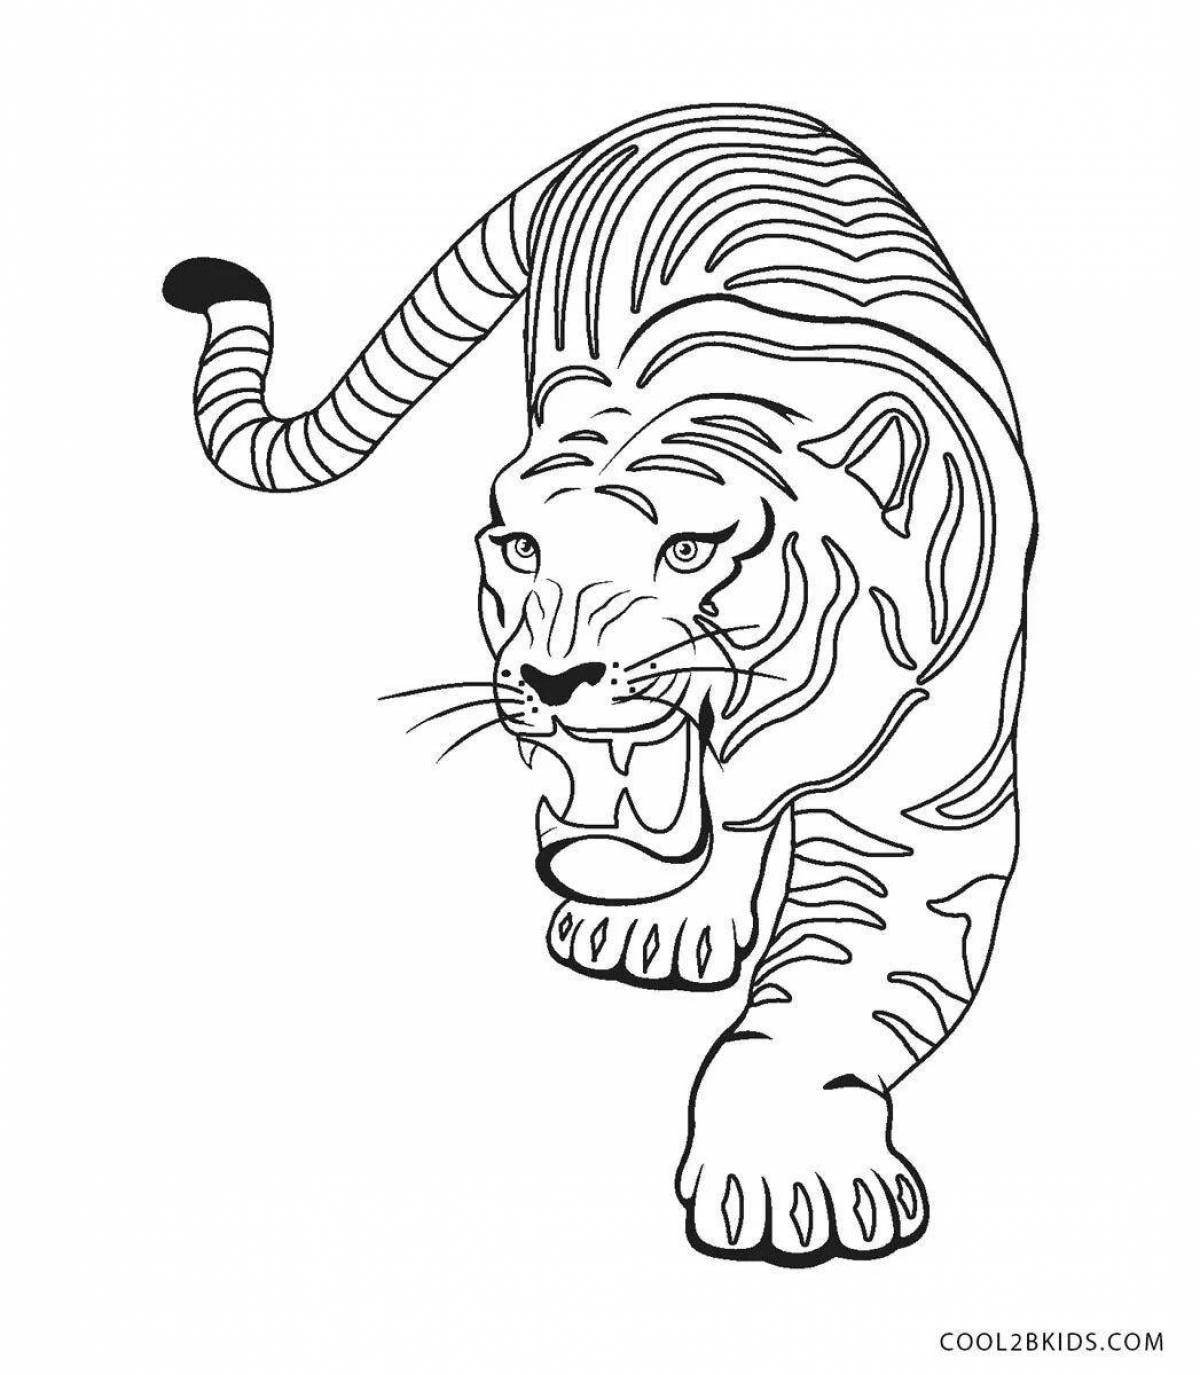 Светящаяся раскраска тигр для детей 6-7 лет